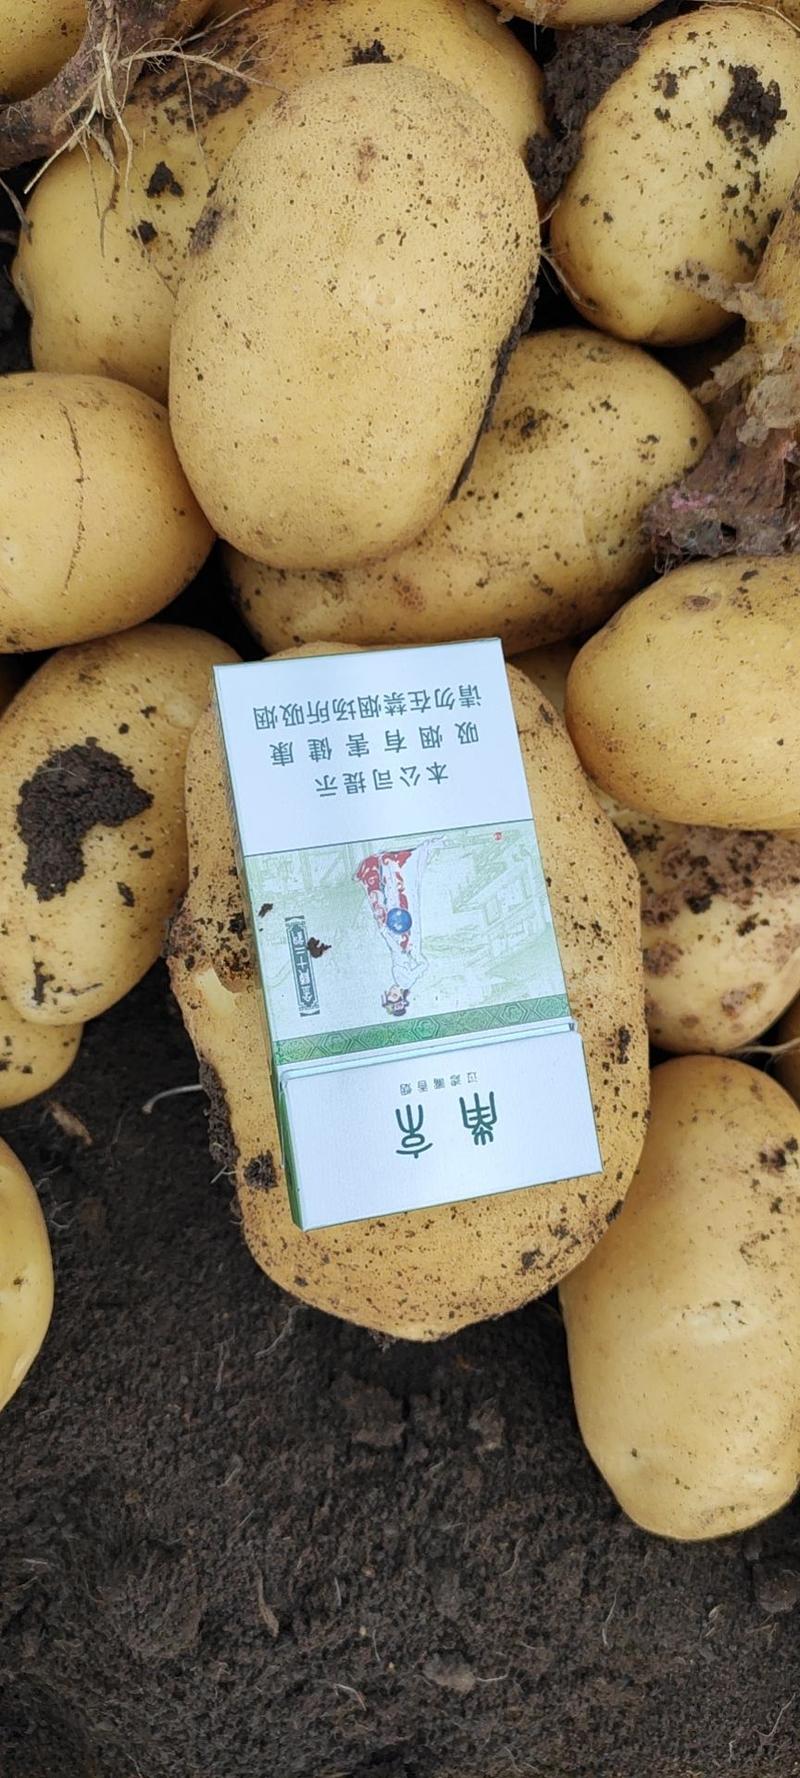 【精品土豆】土豆尤金885土豆黑龙江土豆黄黄皮黄心大土豆